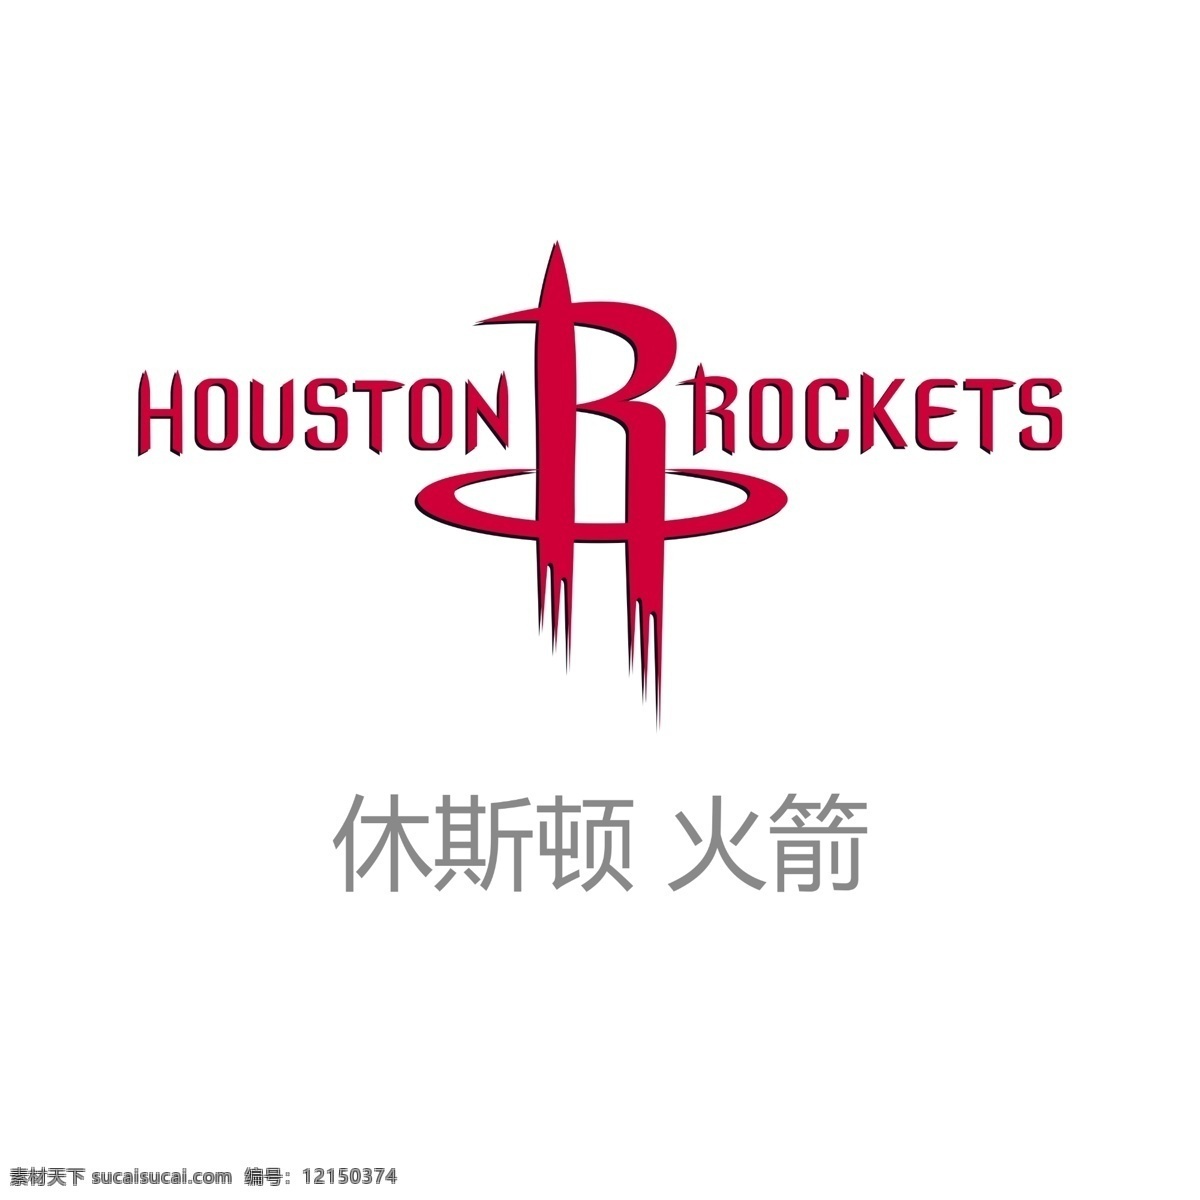 休斯顿 火箭 火箭队 休斯顿火箭 火箭logo 火箭标志 火箭标识 火箭姚明